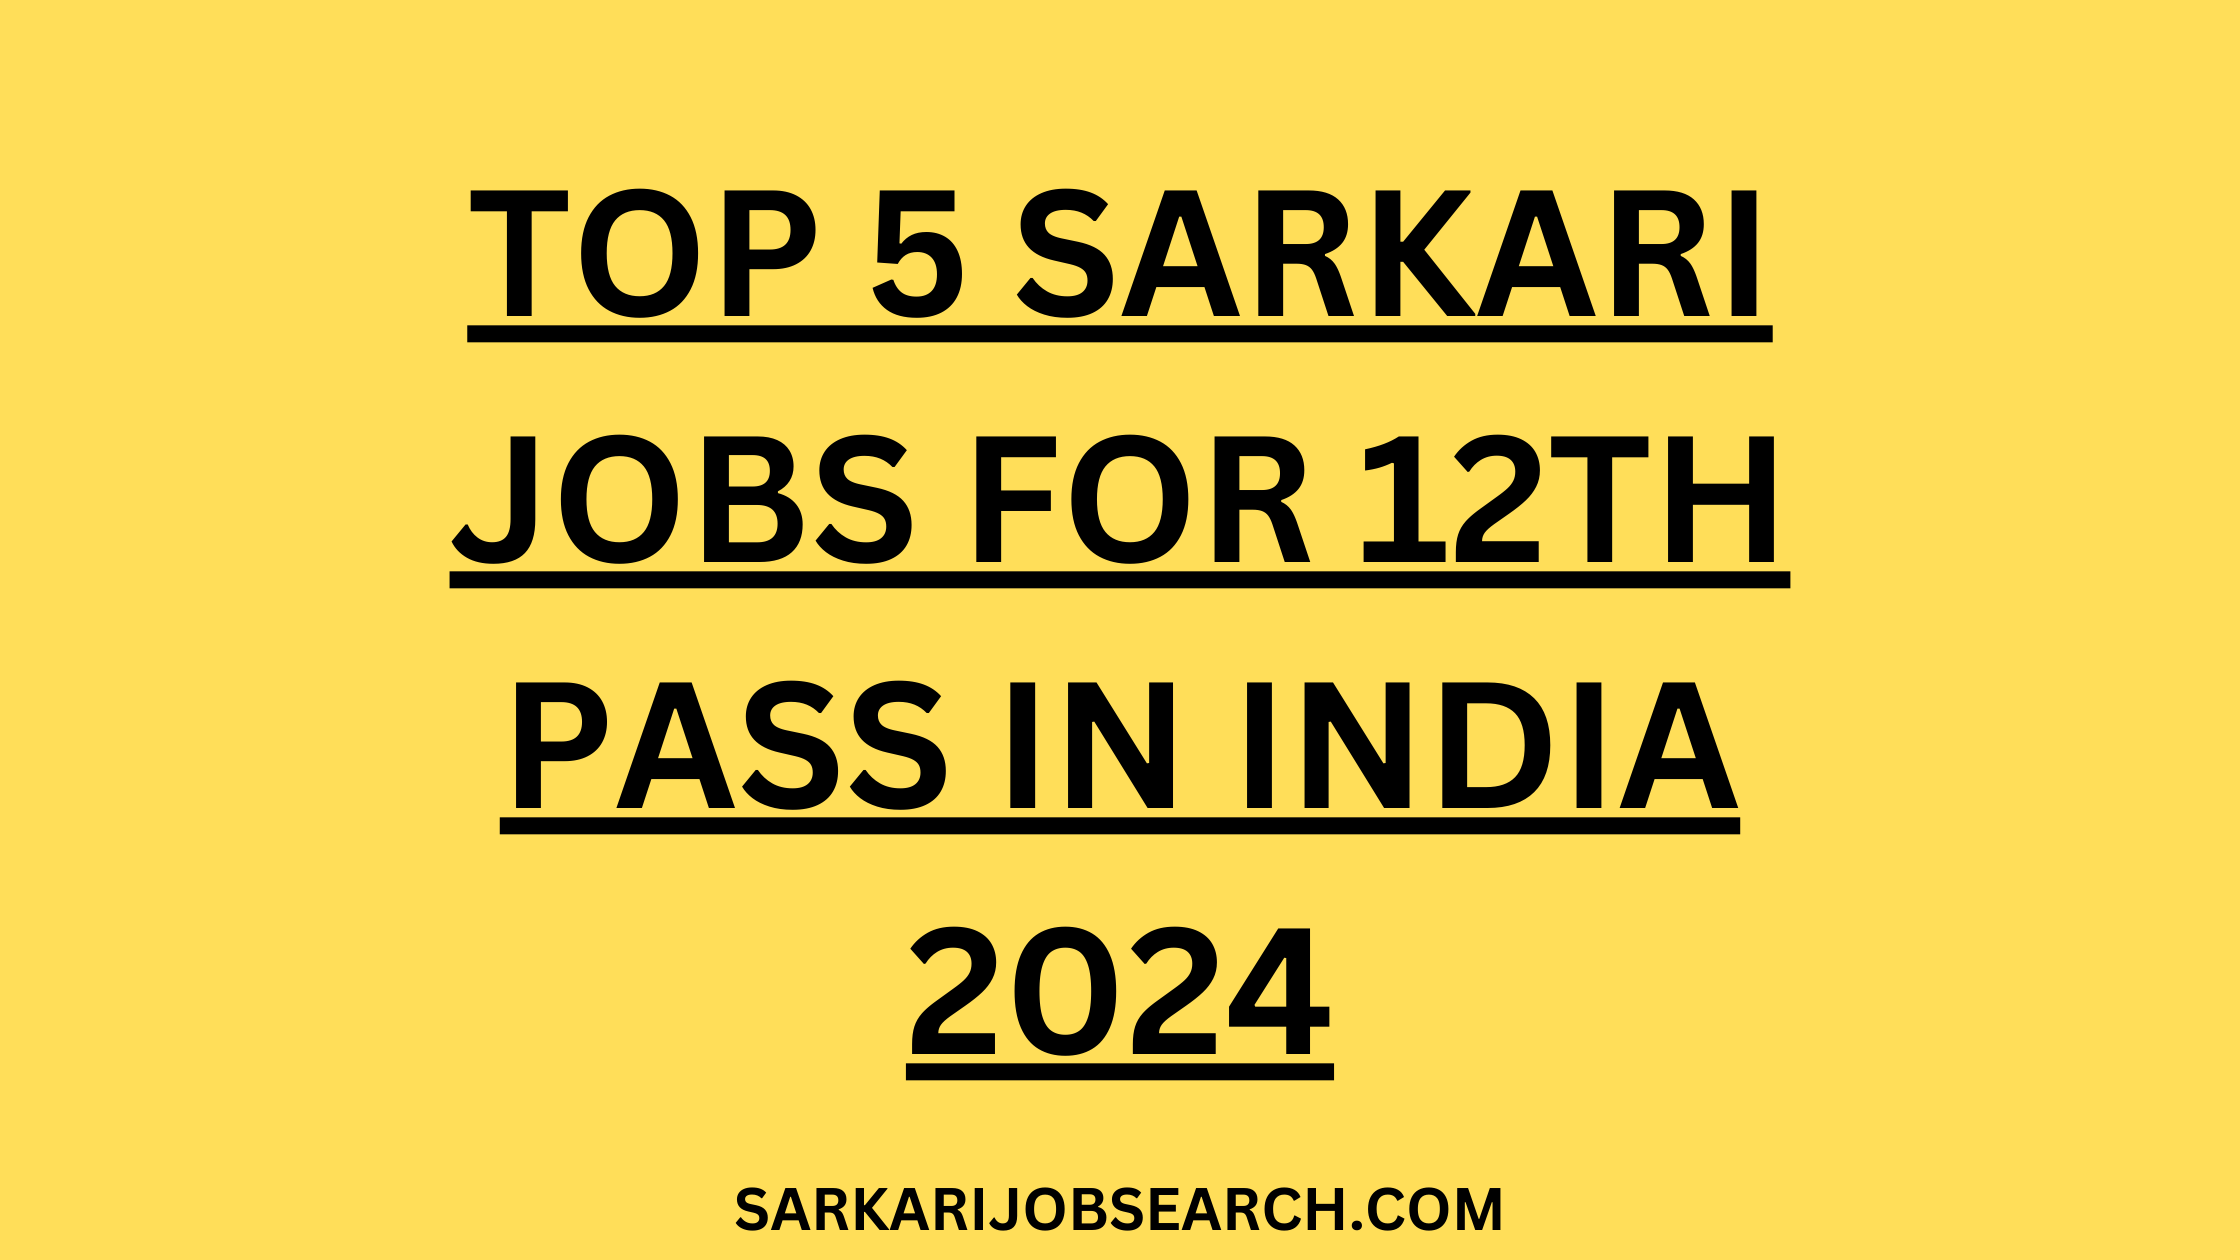 Top 5 Sarkari Job For 12th Pass | 2024